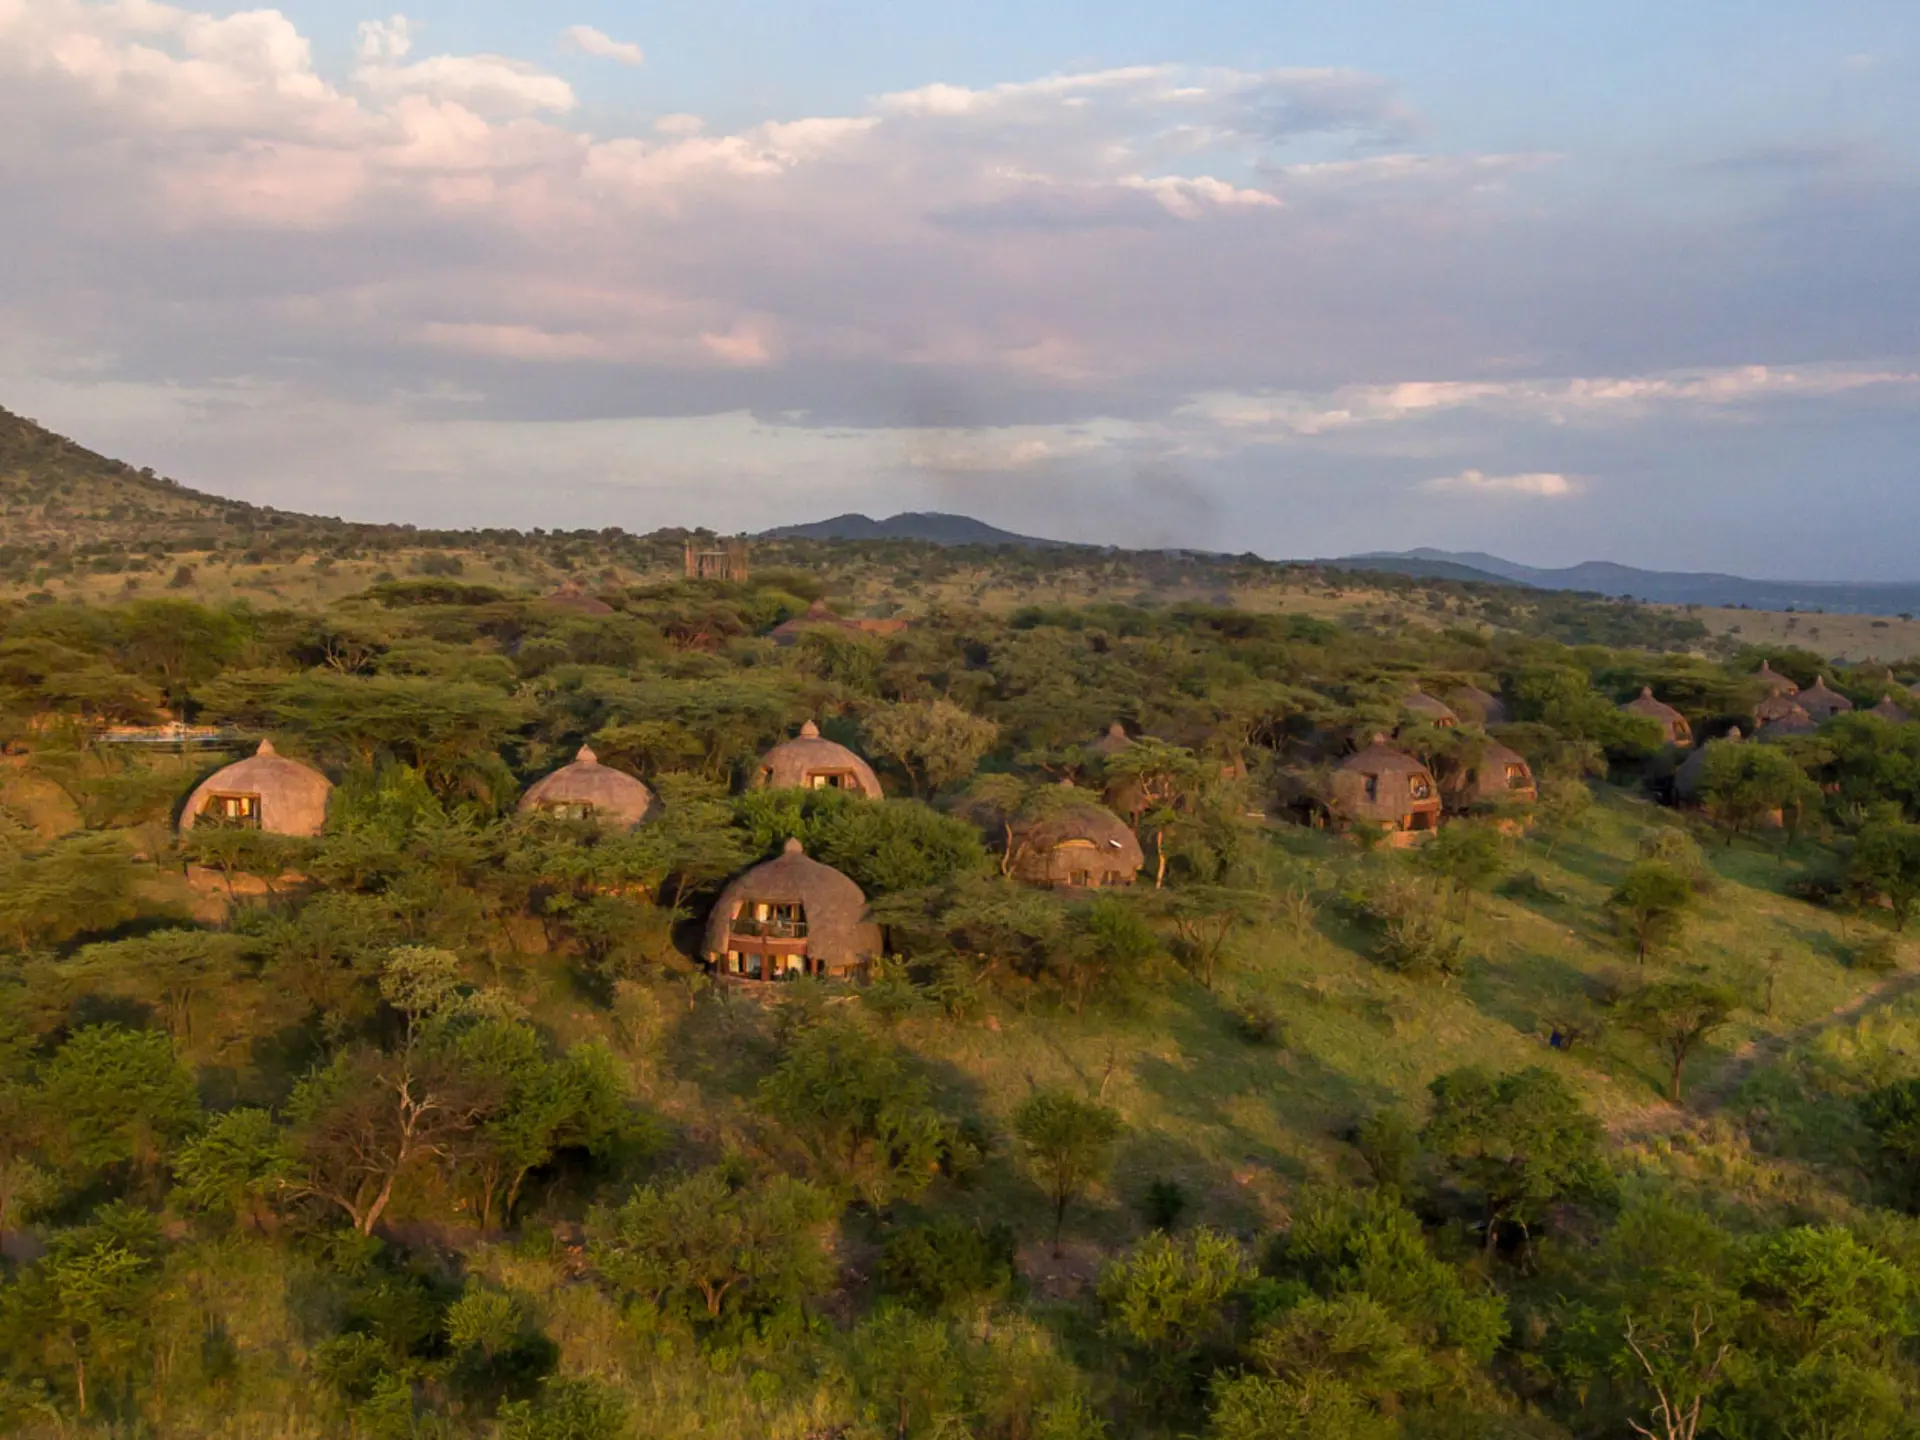 Serengeti Serena Safari Lodge 24